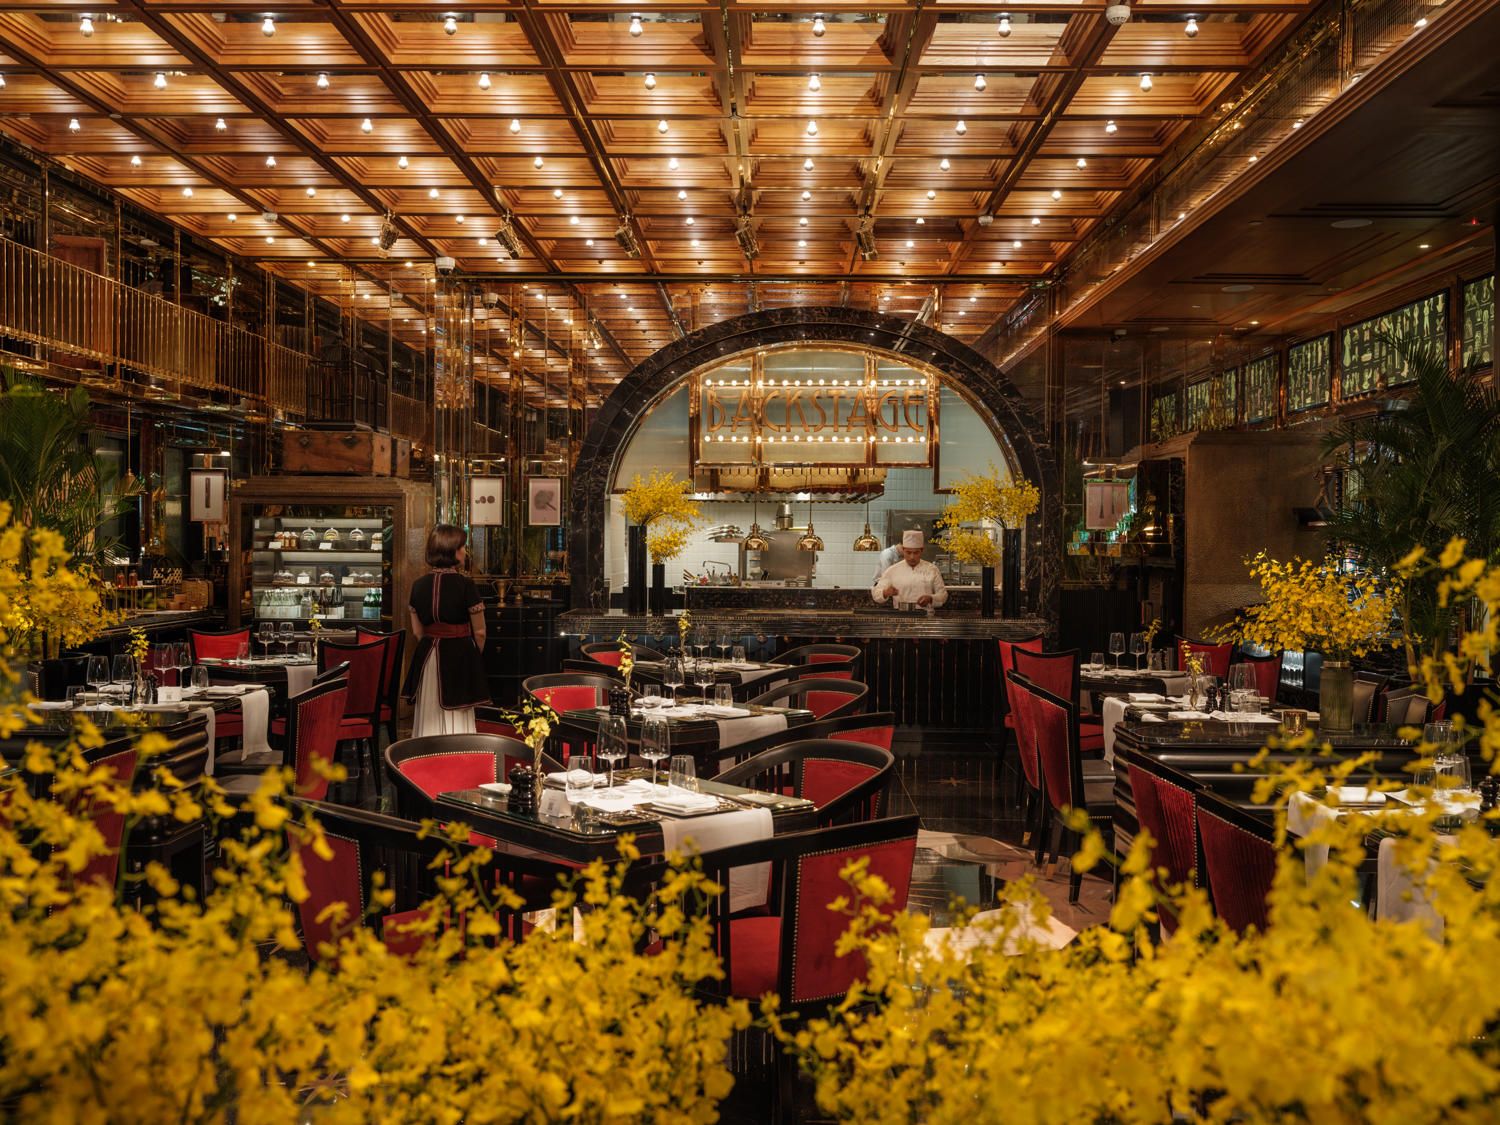 Nhà hàng Hibana by Koki thuộc khách sạn Capella Hanoi 2 năm liên tiếp đạt sao Michelin